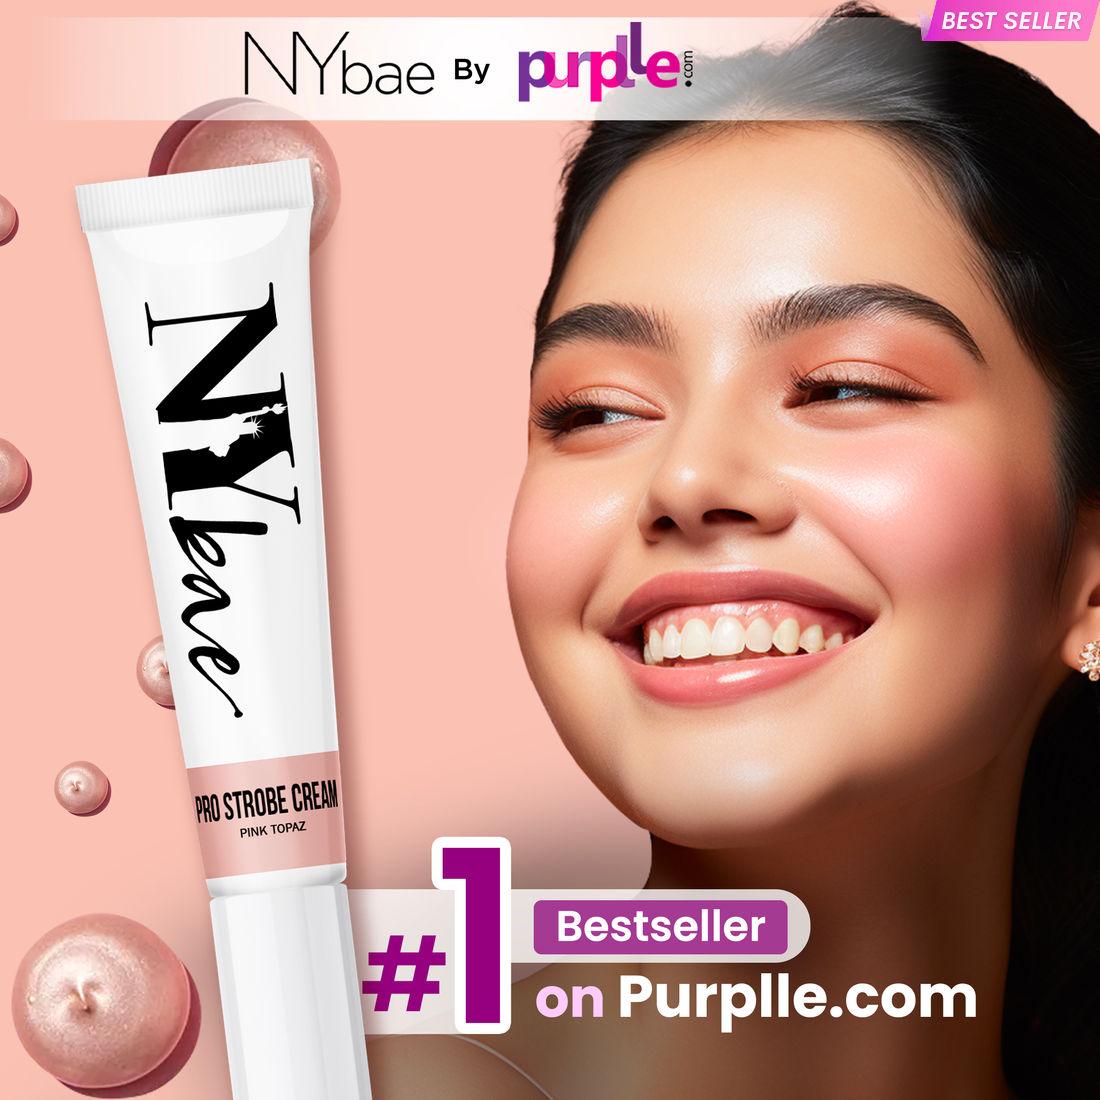 ny bae pro strobe cream | primer + highlighter + moisturiser | glowing korean skin | value pack - pink topaz (30g)